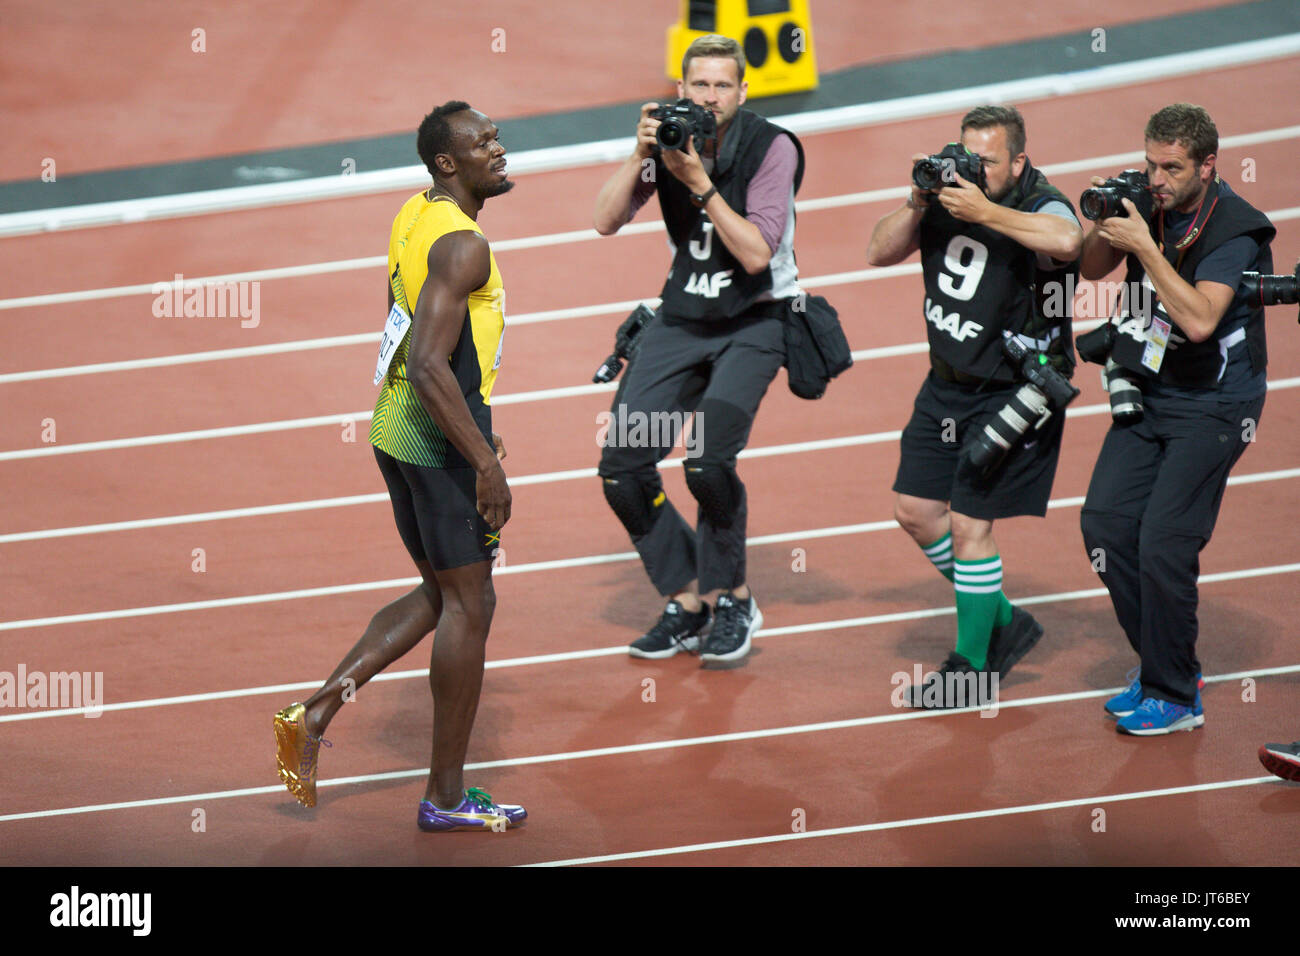 LONDON, ENGLAND - 05. August: Usain Bolt aus Jamaika nach seinem dritten Platz bei den Herren 100 Meter Finale während der Tag zwei des 16. IAAF Leichtathletik WM 2017 in London an der London Stadion am 5. August 2017 in London, Vereinigtes Königreich Stockfoto